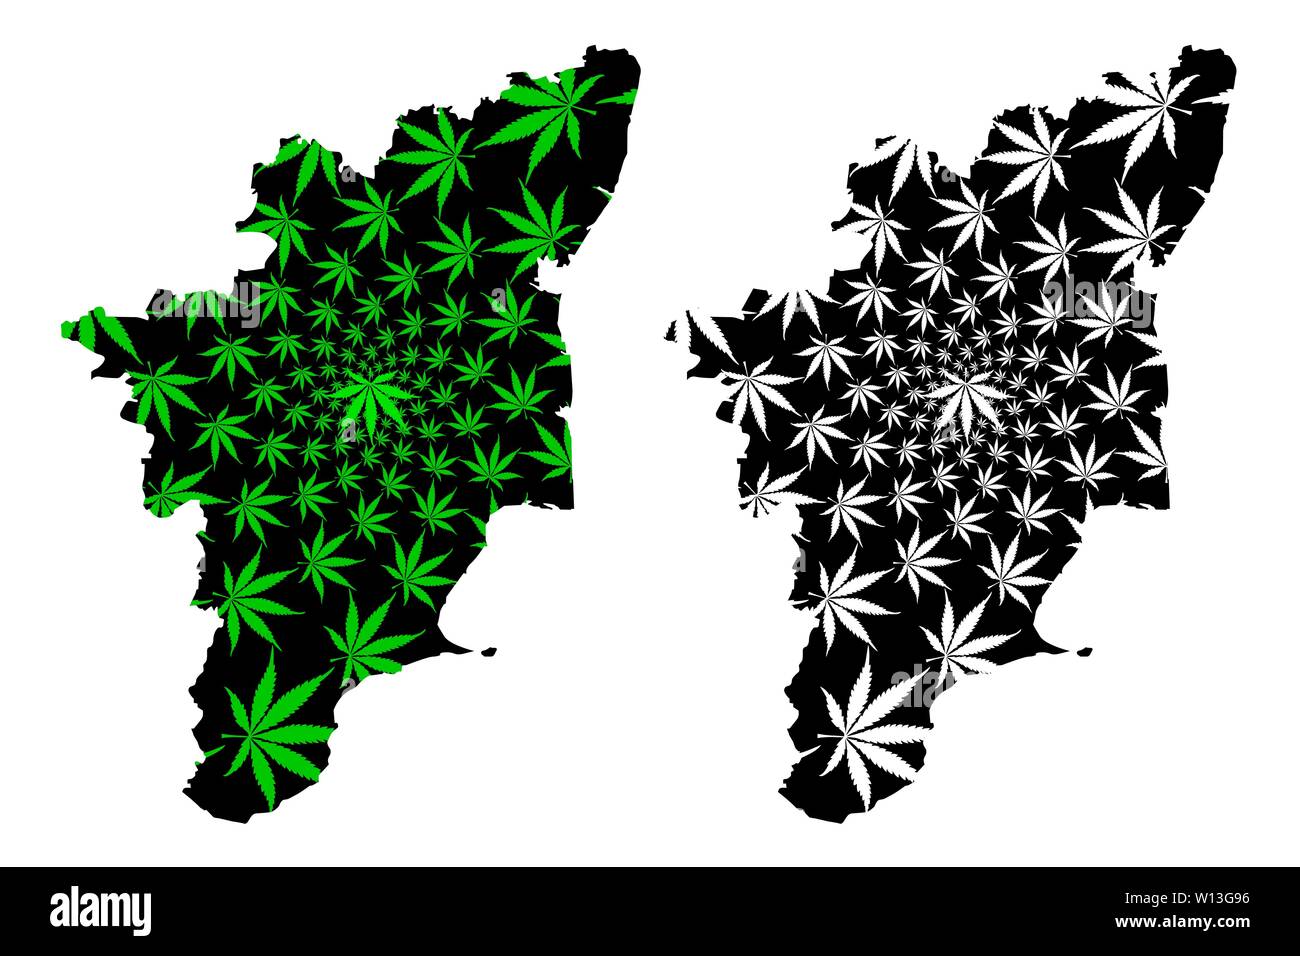 Tamil Nadu (Indien, Föderierte Staaten, Republik Indien) Karte ist Cannabis blatt grün und schwarz gestaltet, Tamil Nadu (Madras) Karte ma Stock Vektor